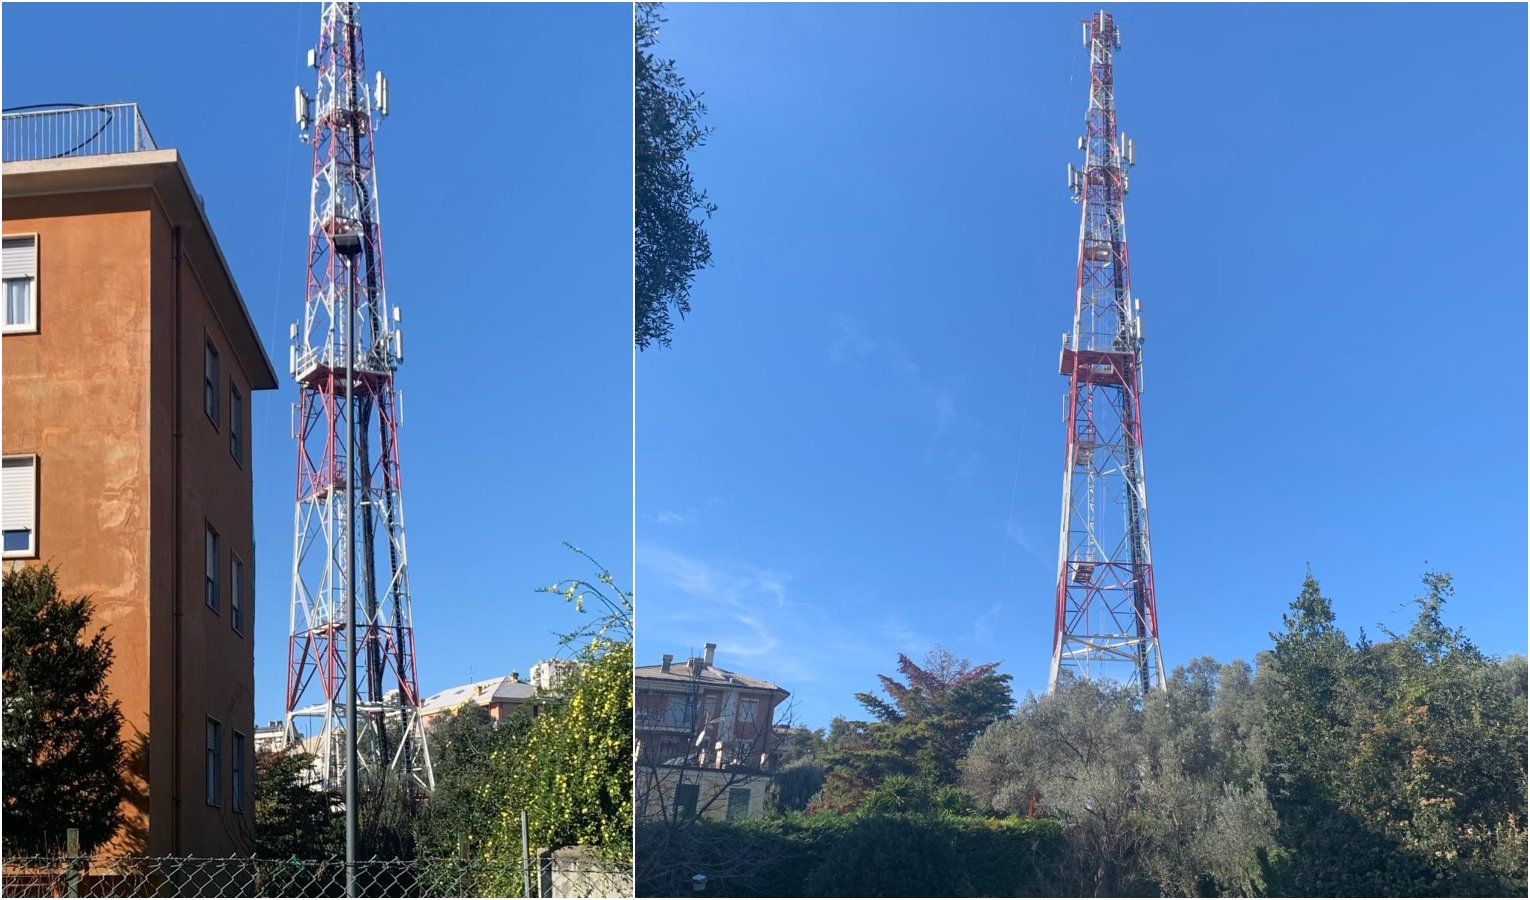 Installazione antenne telefoniche a Genova, in arrivo un regolamento ad hoc